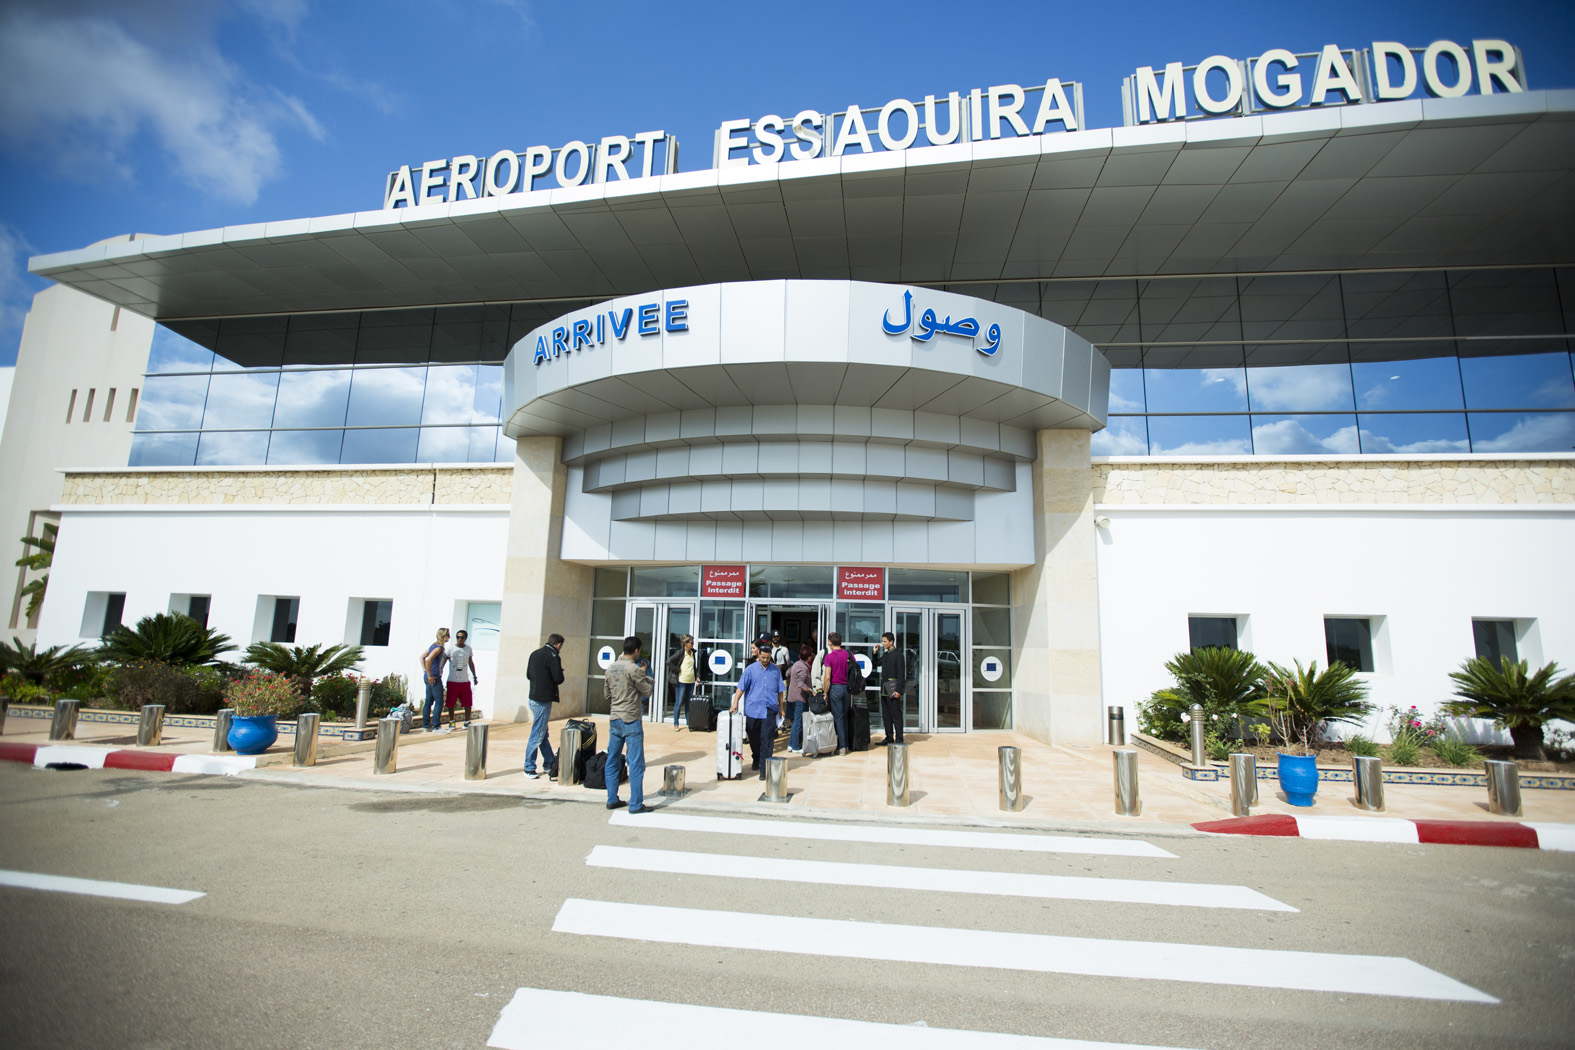 Bon cru pour l'aéroport Essaouira Mogador en 2017